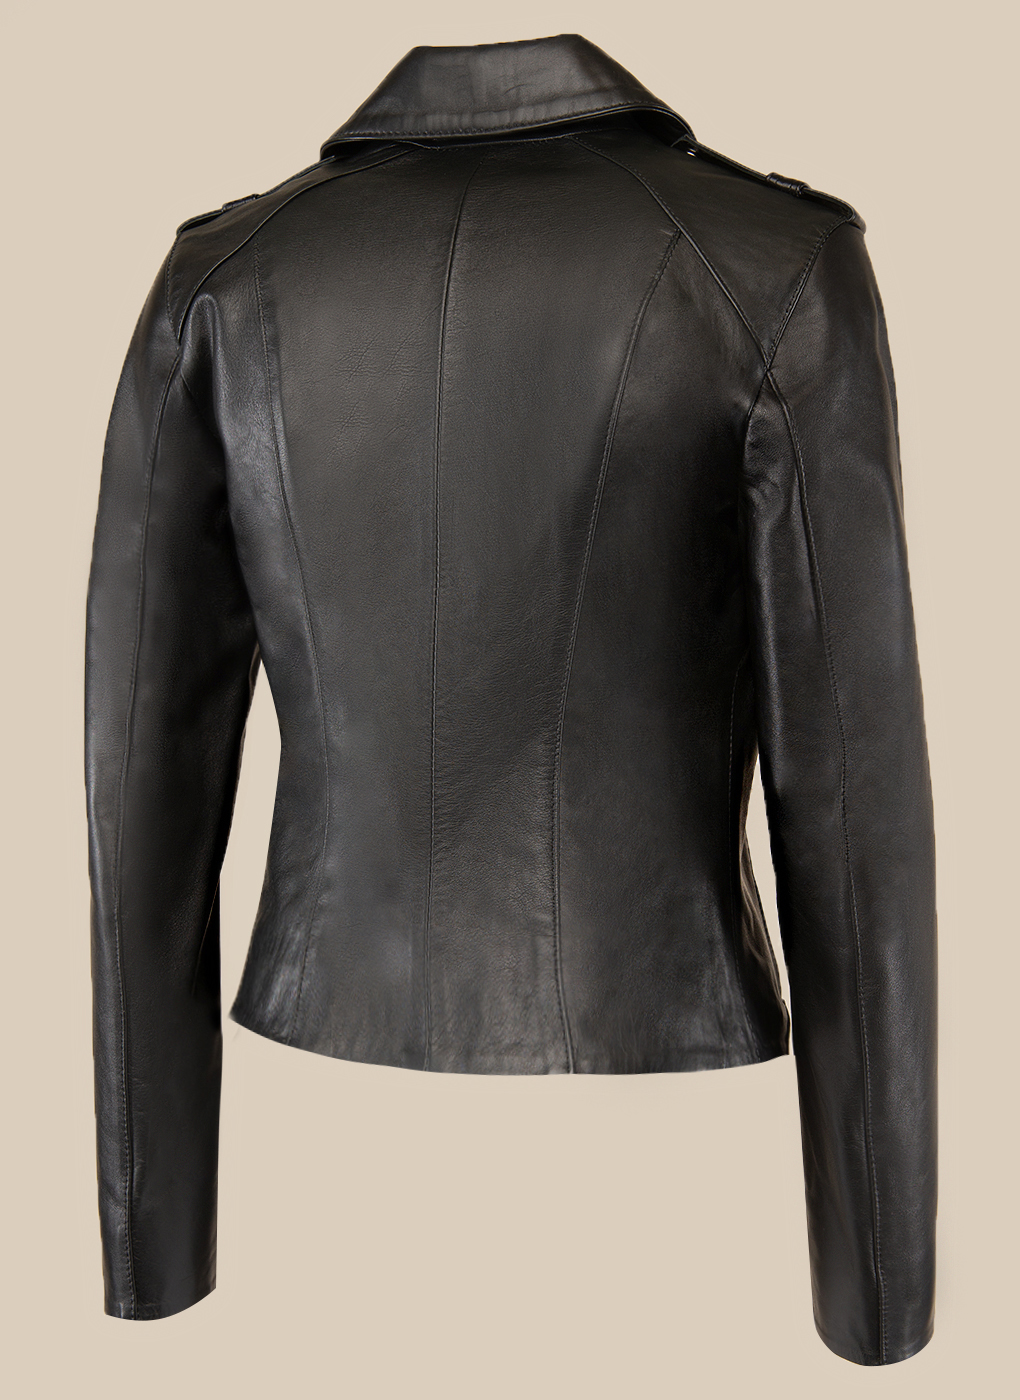 Кожаная куртка женская Каляев 47111 черная 54 RU